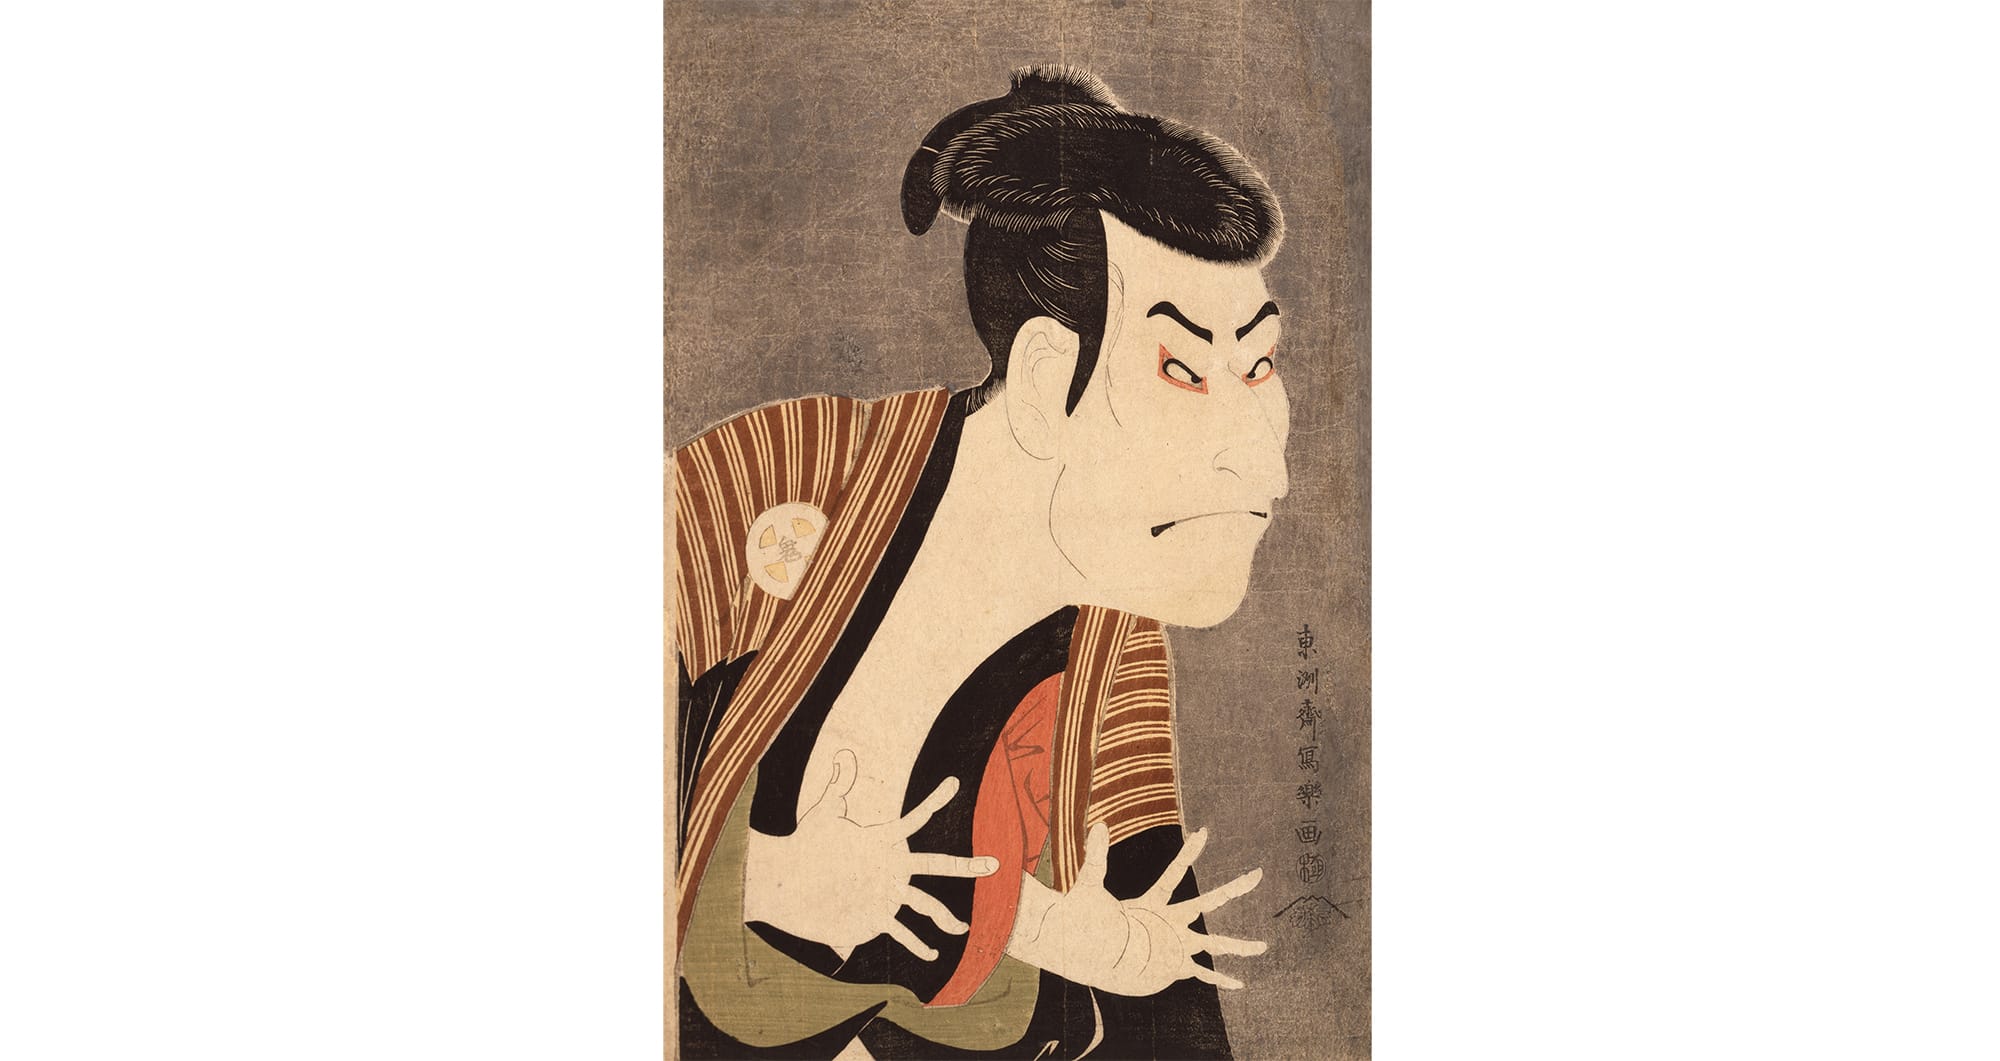 東洲斎寫樂「三代目大谷鬼次江戶兵衛」大判 錦繪（彩色版畫） 寬政6年（1794）5月　日本浮世繪博物館
似明星寫真的「役者繪」（Yakusha-e）（繪畫題材多是當時歌舞伎的演員），當時非常有人氣，也是觸發浮世繪滲透到一般平民百姓的原因。
